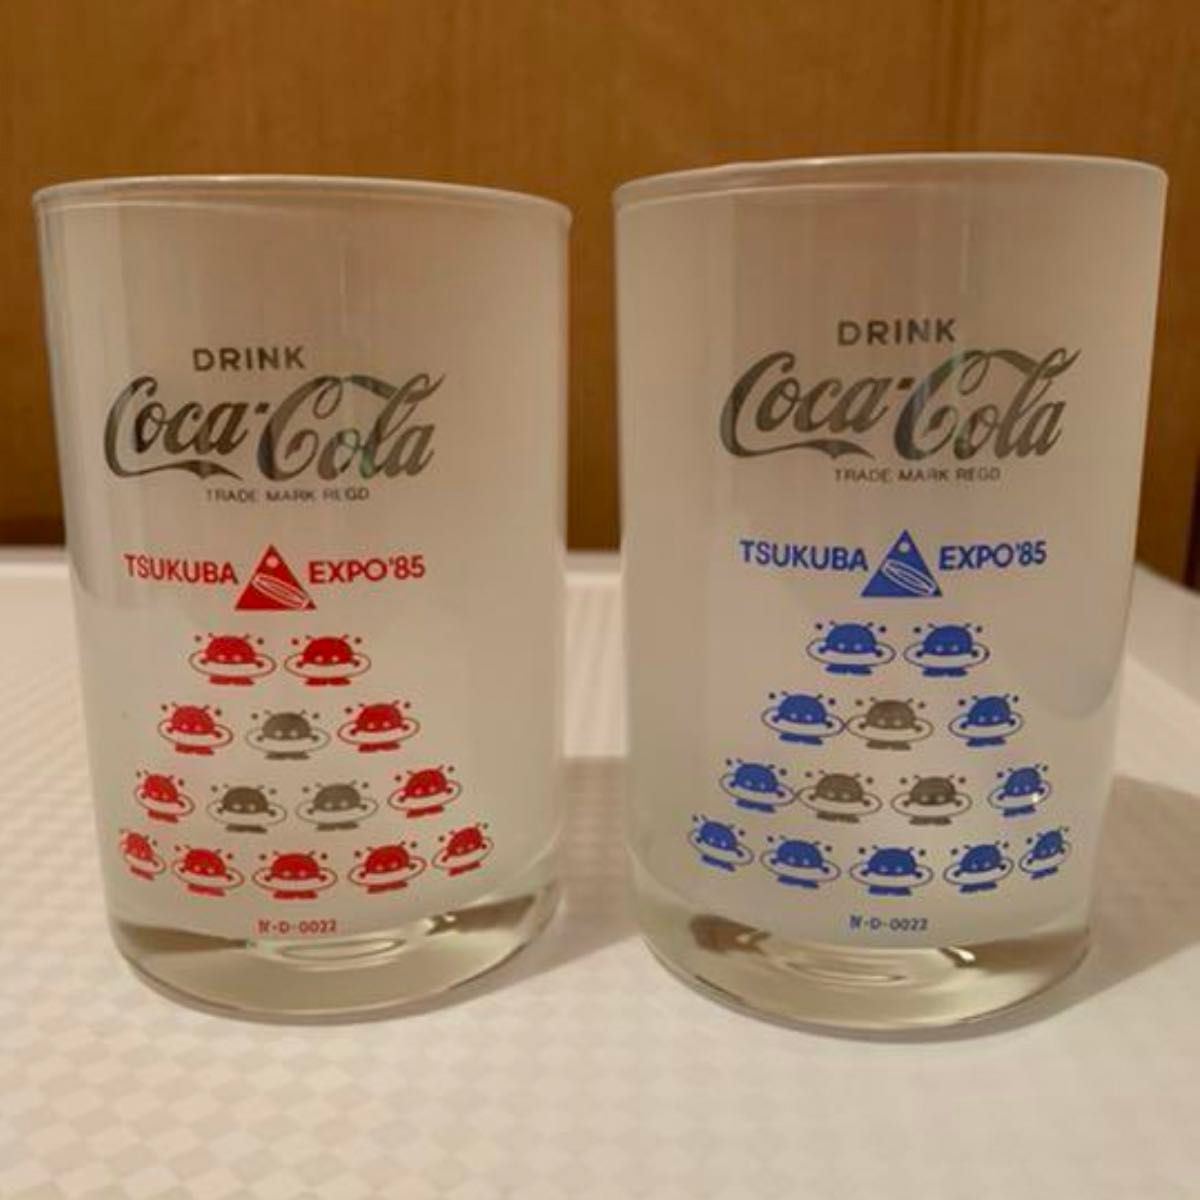 つくば科学万博  EXPO'85  コスモ星丸  コカコーラ  グラス